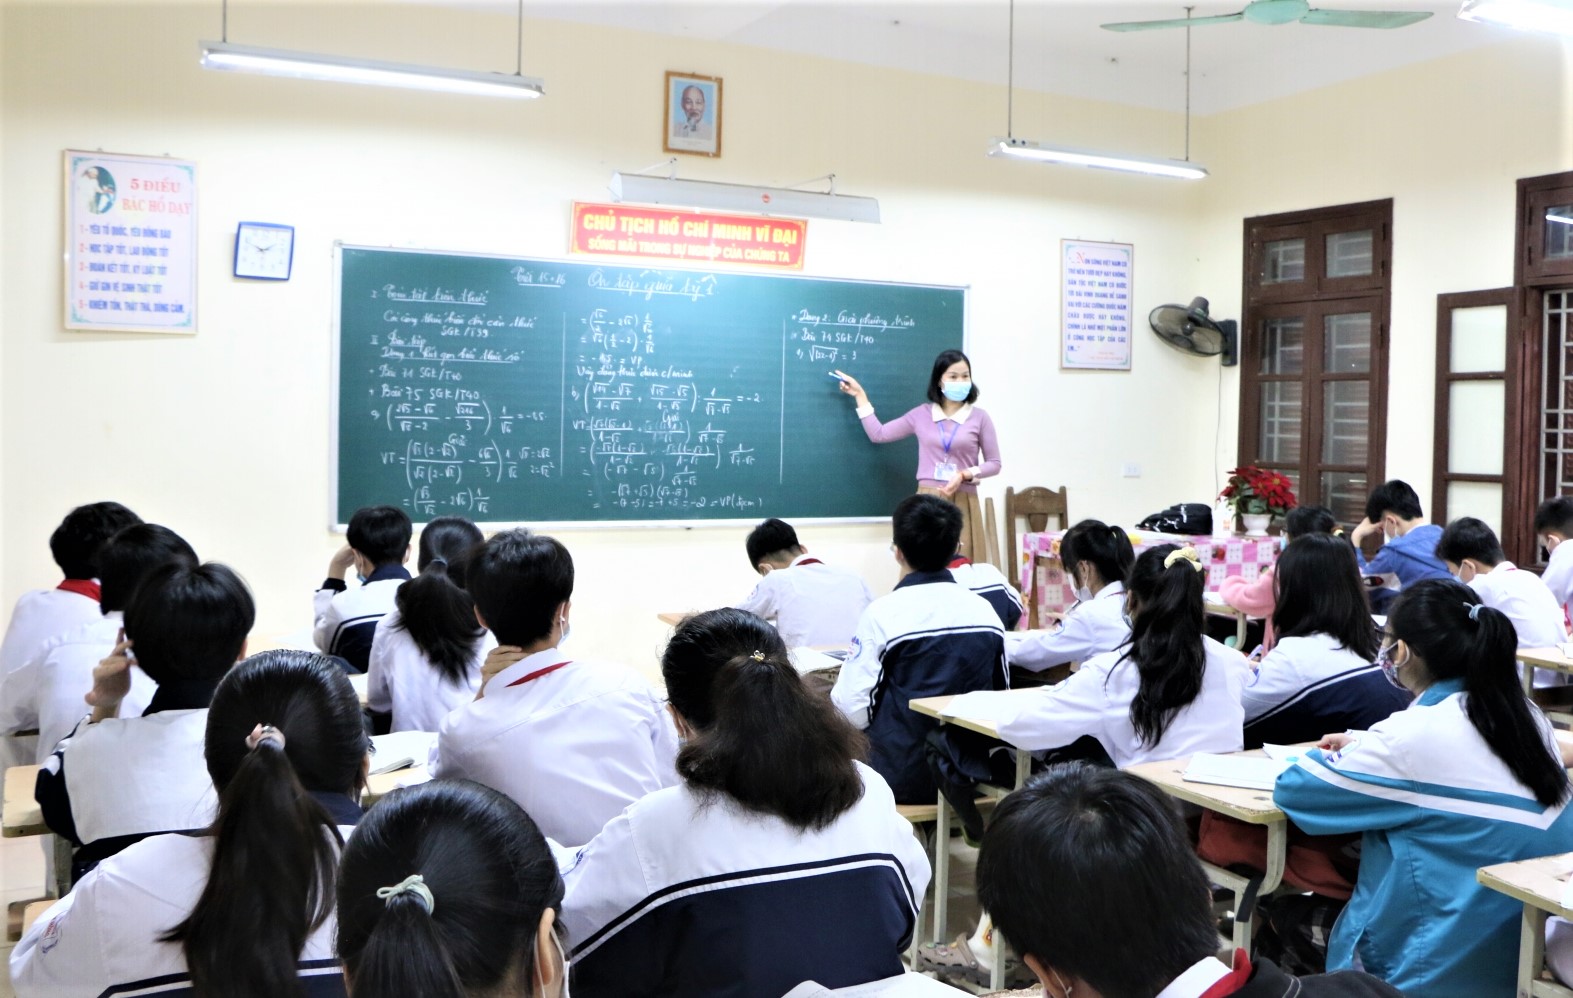 Thêm một quận ở Hà Nội học sinh chuyển sang học trực tuyến từ tuần tới - Ảnh 2.